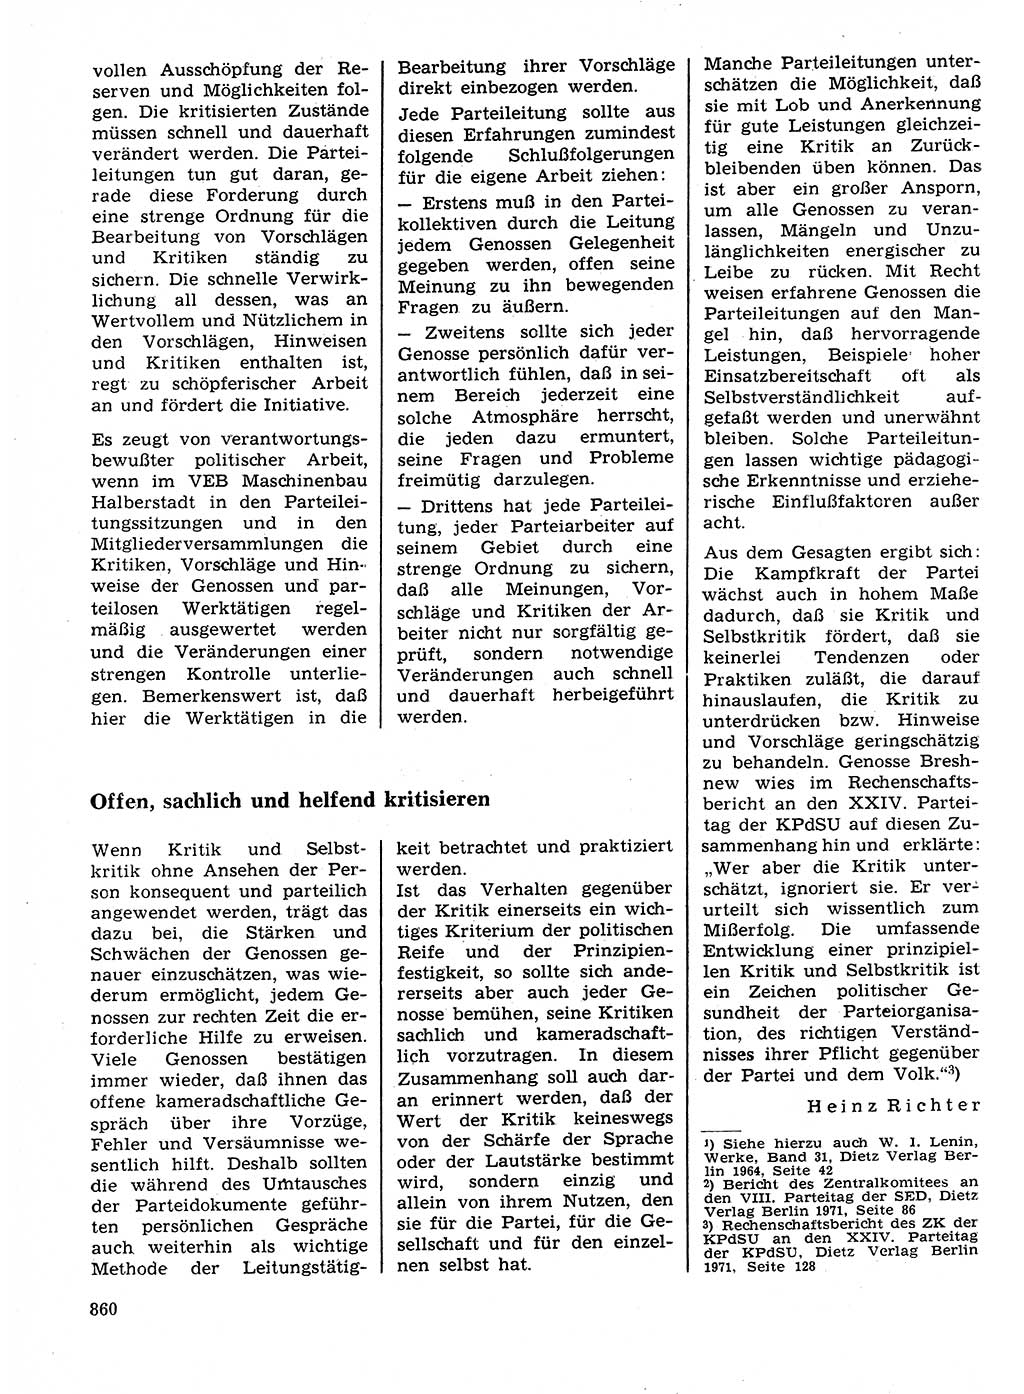 Neuer Weg (NW), Organ des Zentralkomitees (ZK) der SED (Sozialistische Einheitspartei Deutschlands) für Fragen des Parteilebens, 26. Jahrgang [Deutsche Demokratische Republik (DDR)] 1971, Seite 860 (NW ZK SED DDR 1971, S. 860)